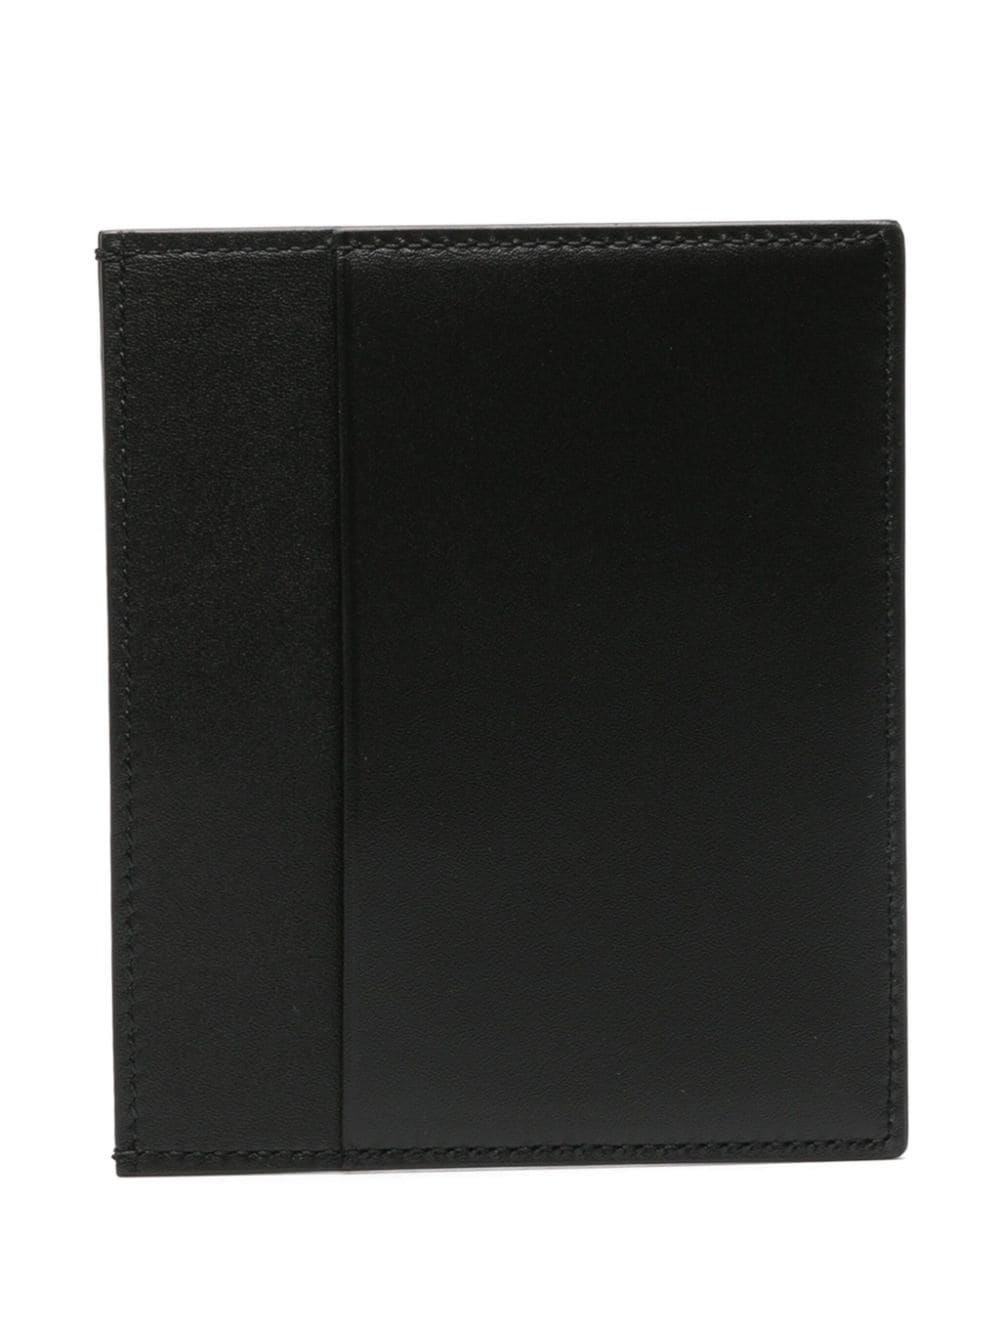 Leather vertical cardholder<BR/><BR/><BR/>